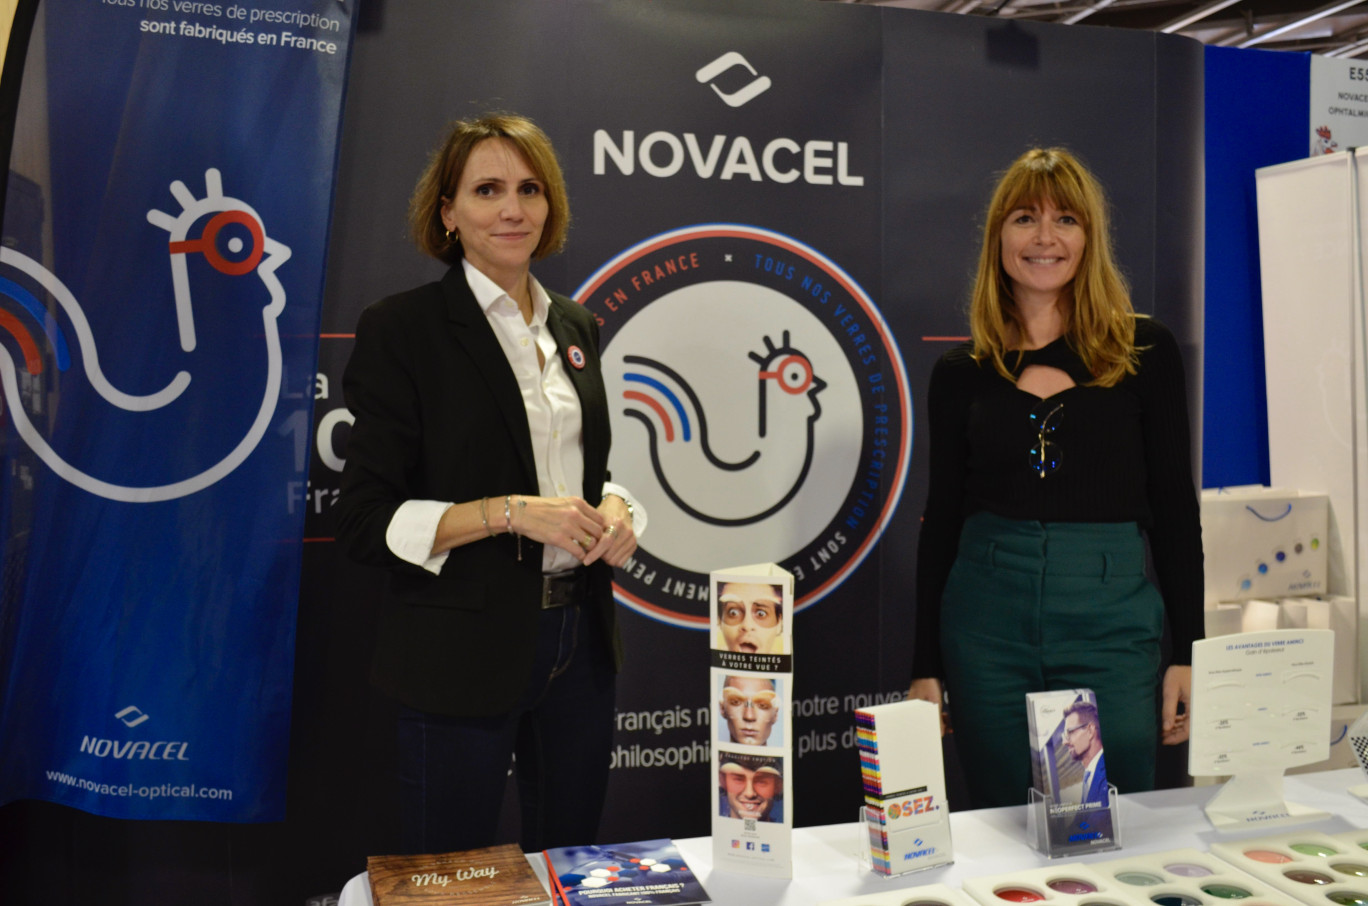 Le stand du groupe Novacel, qui a exposé ses produits au salon Made in France à Paris, du 10 au 13 novembre. ©Aletheia Press/ C. De Martino